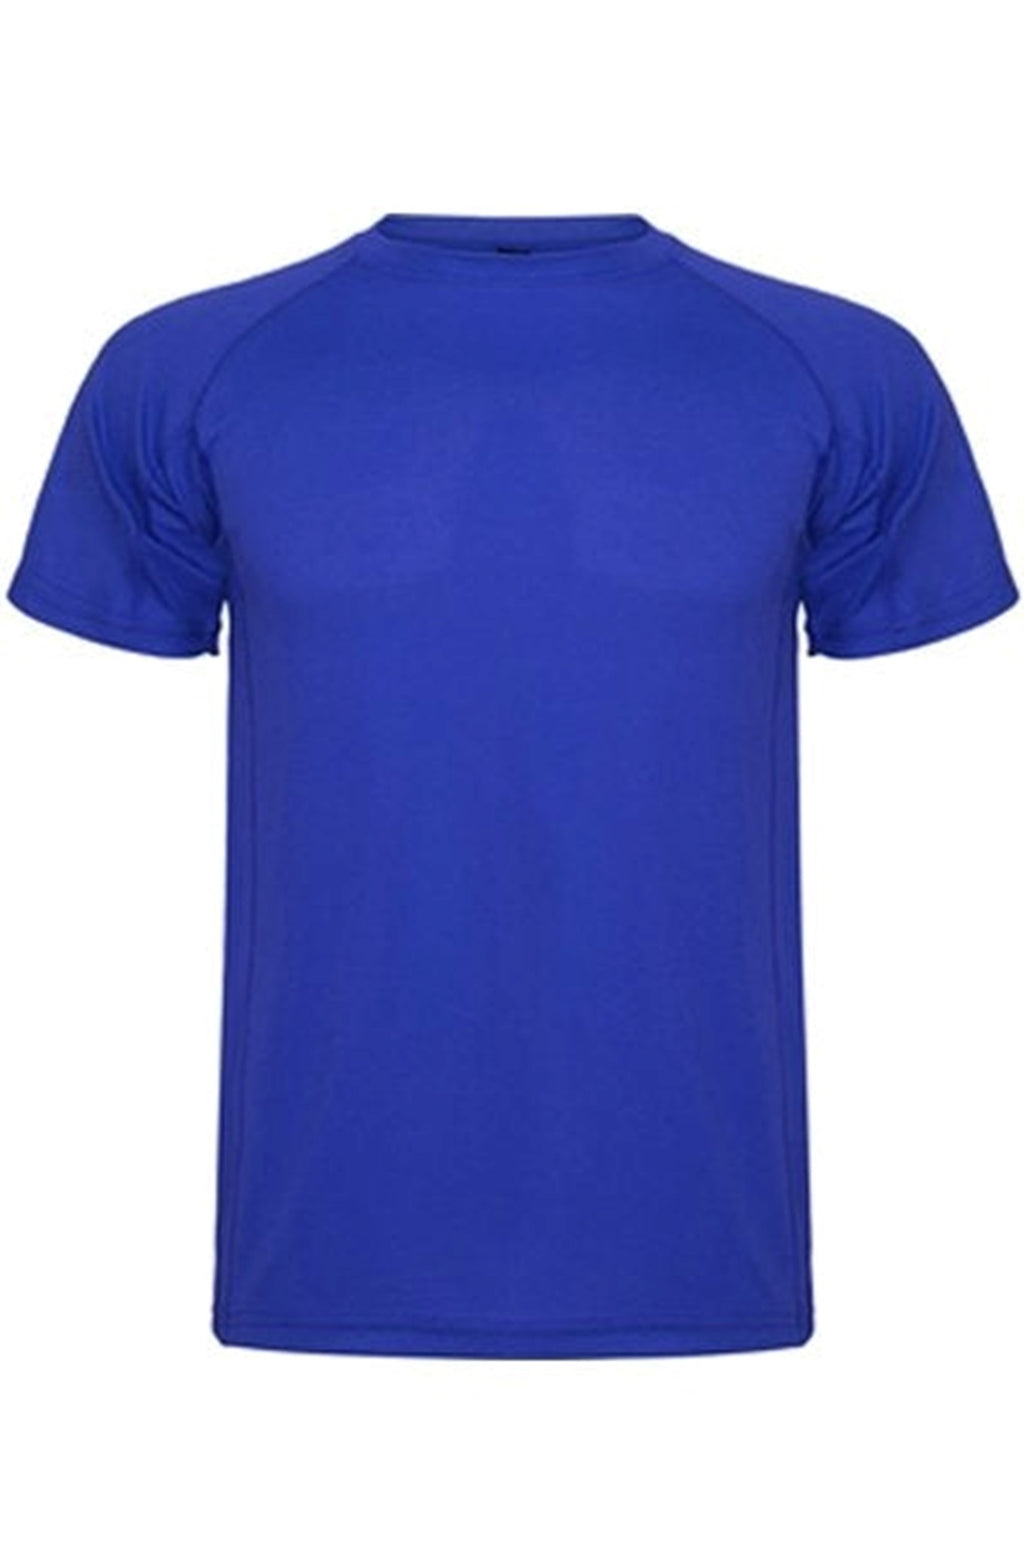 Trenings T-shirt - Blå